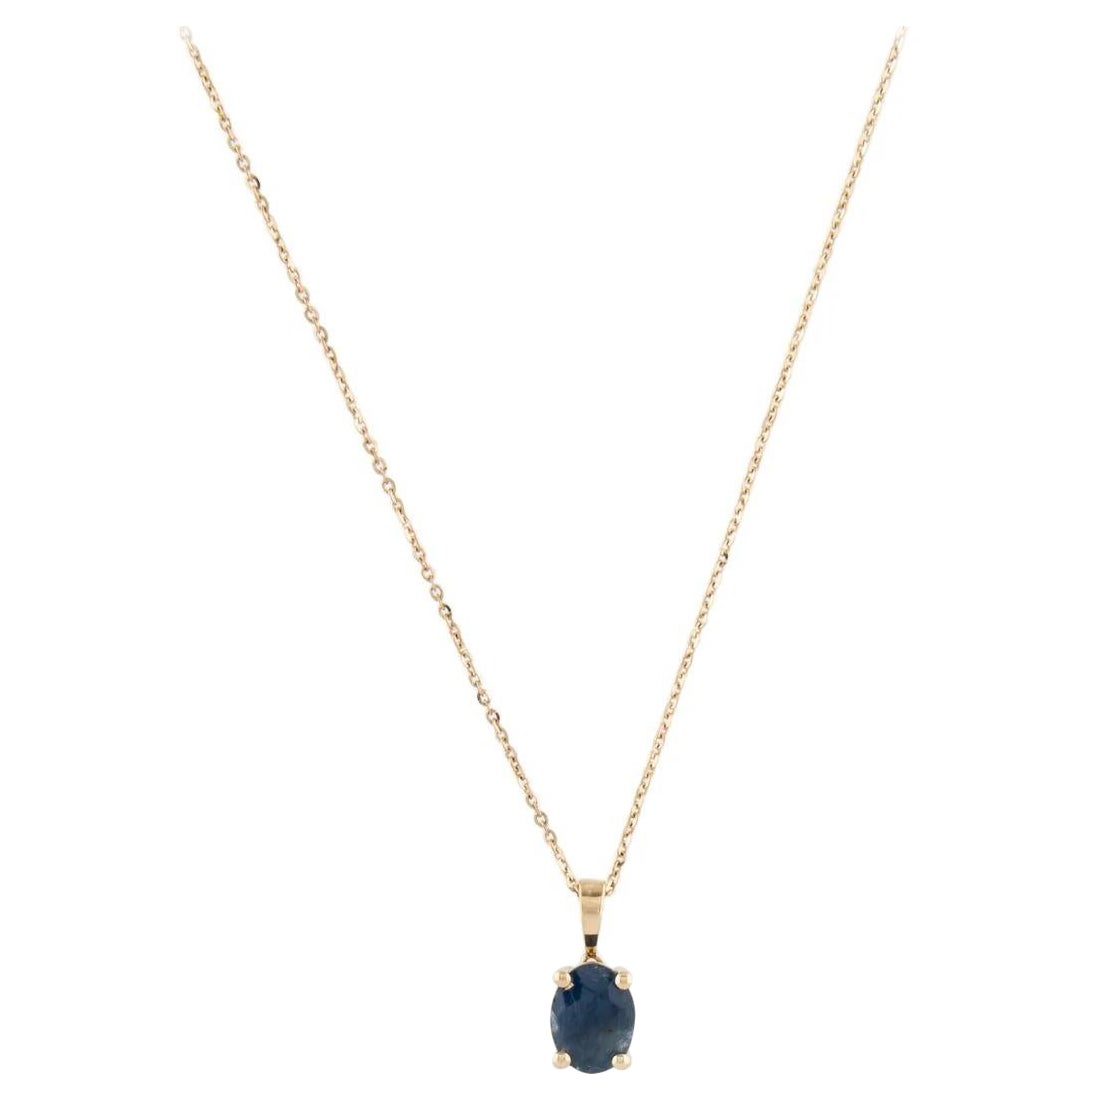 Collier 14K à pendentif saphir - 1.33ct, Elegance de la pierre bleue, Design Timeless